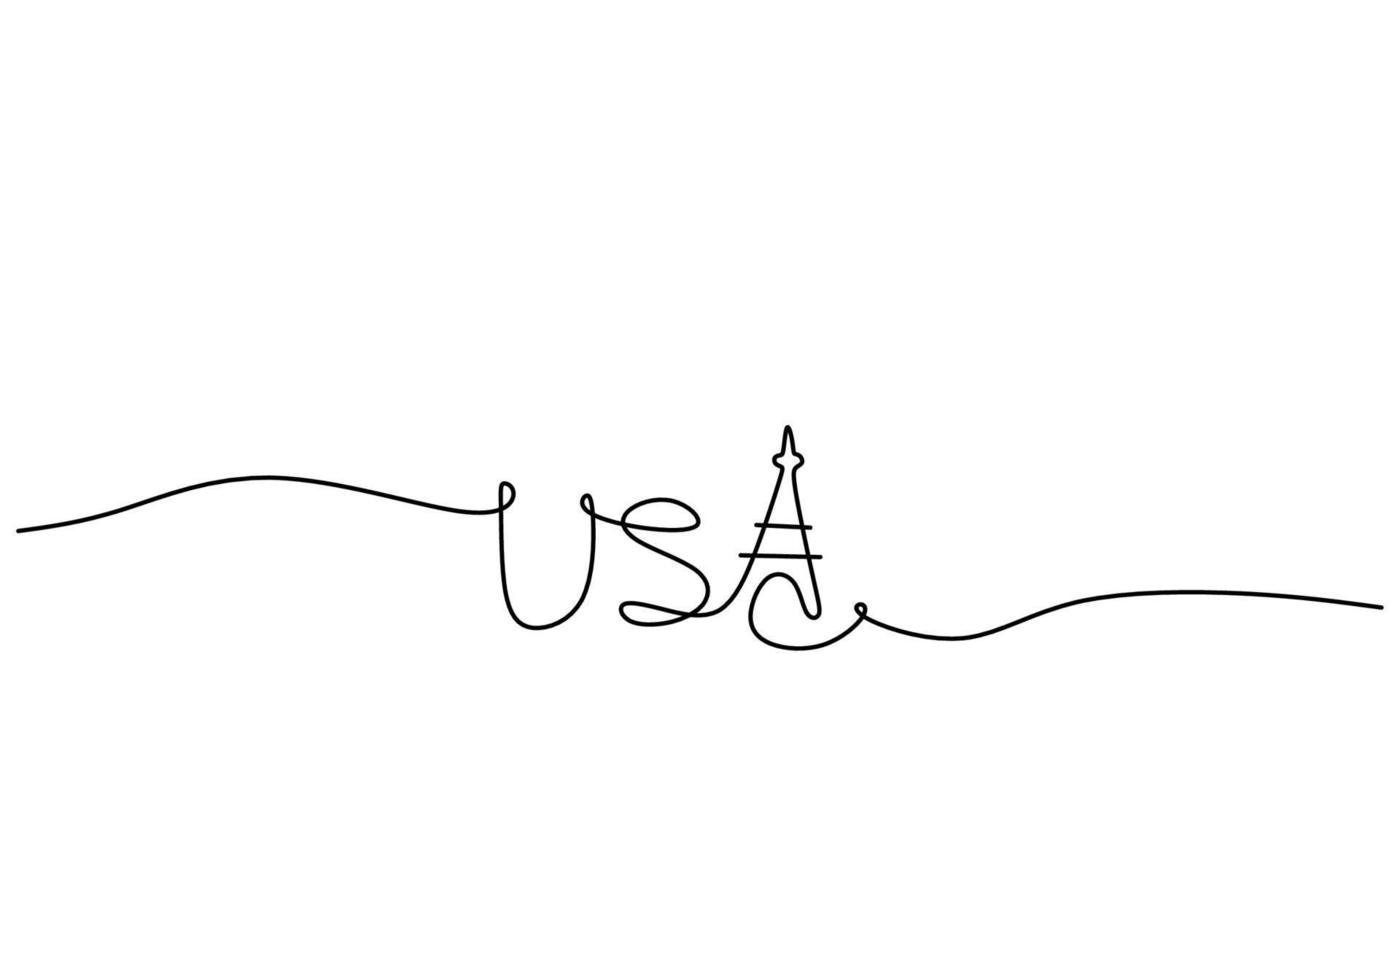 eine durchgehende strichzeichnung des amerikanischen unabhängigkeitstags mit usa-logo vektor